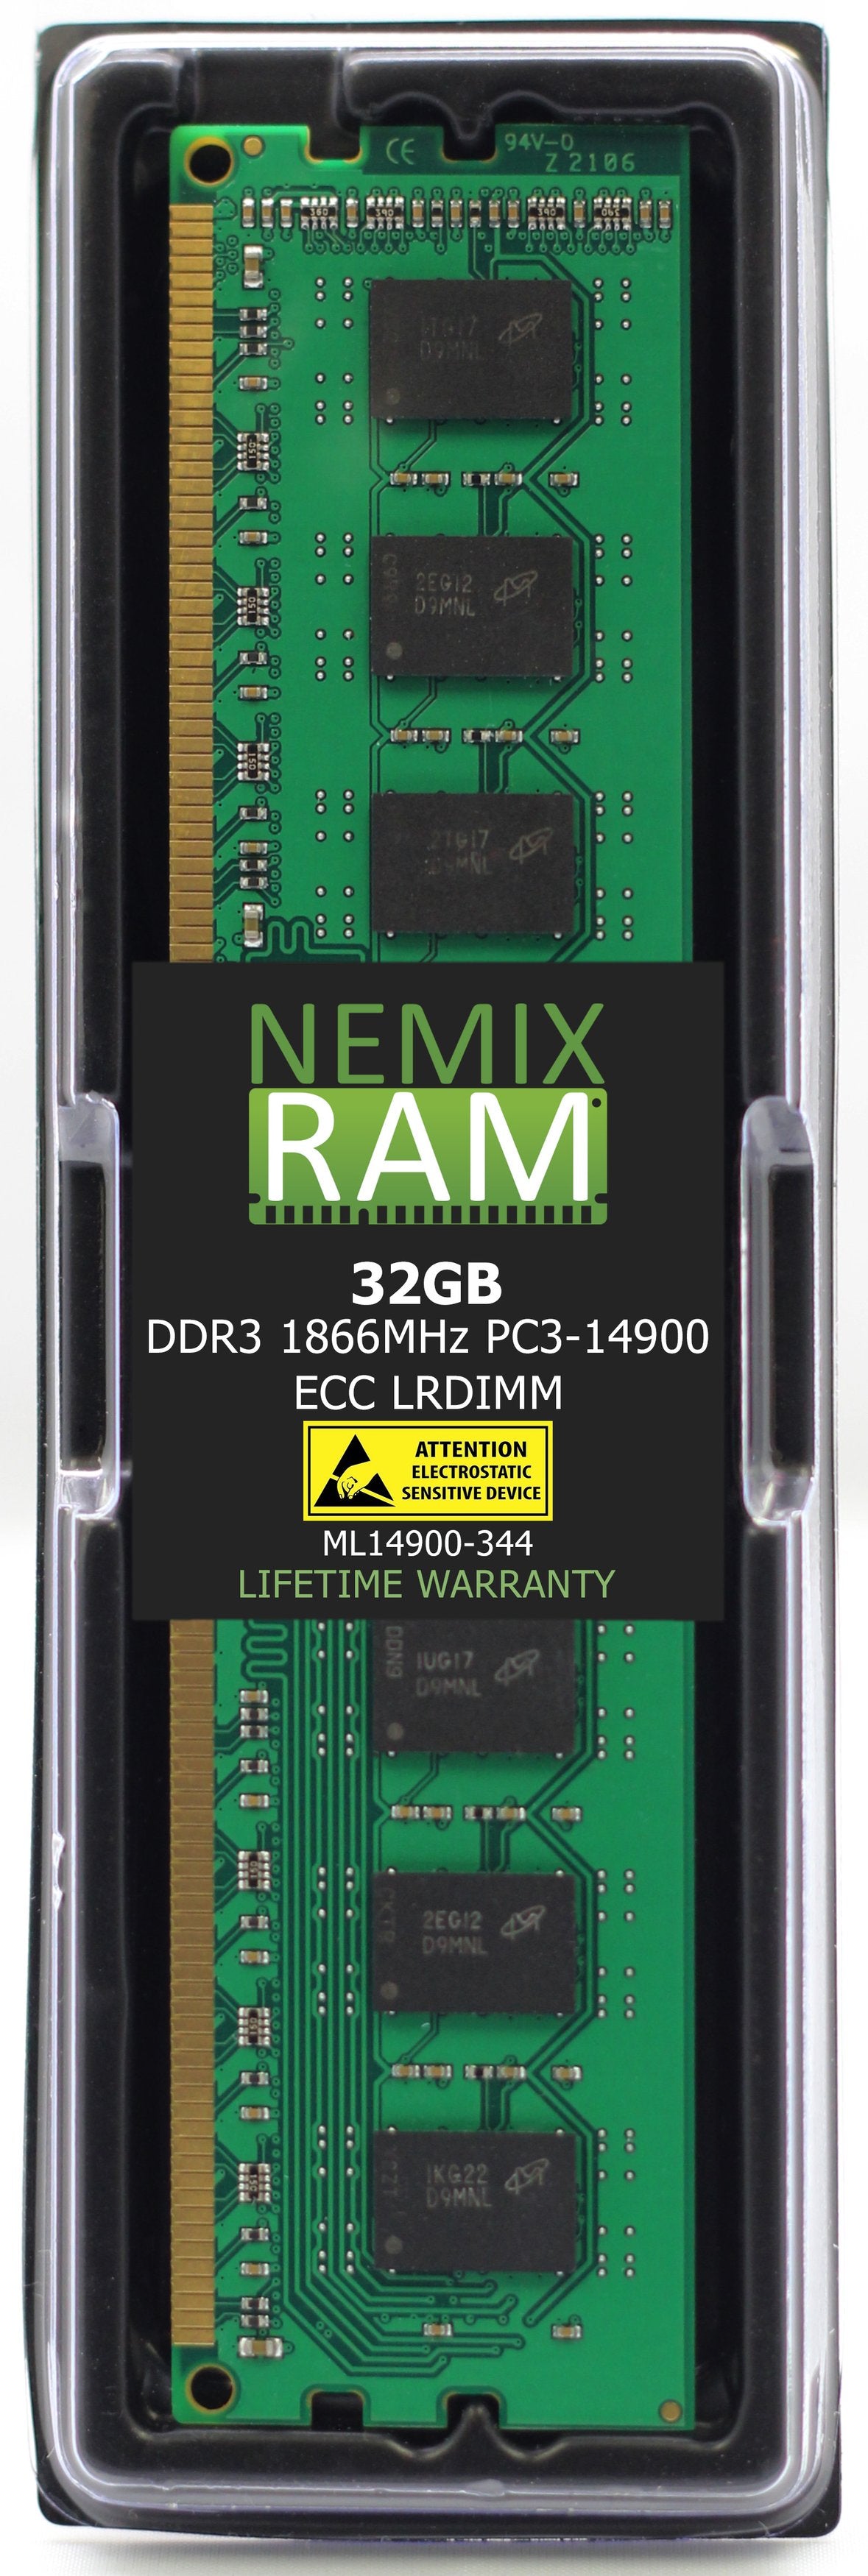 Hynix HMT84GL7BMR4C-RD 32GB DDR3 1866MHZ PC3-14900 LRDIMM Compatible Memory Module